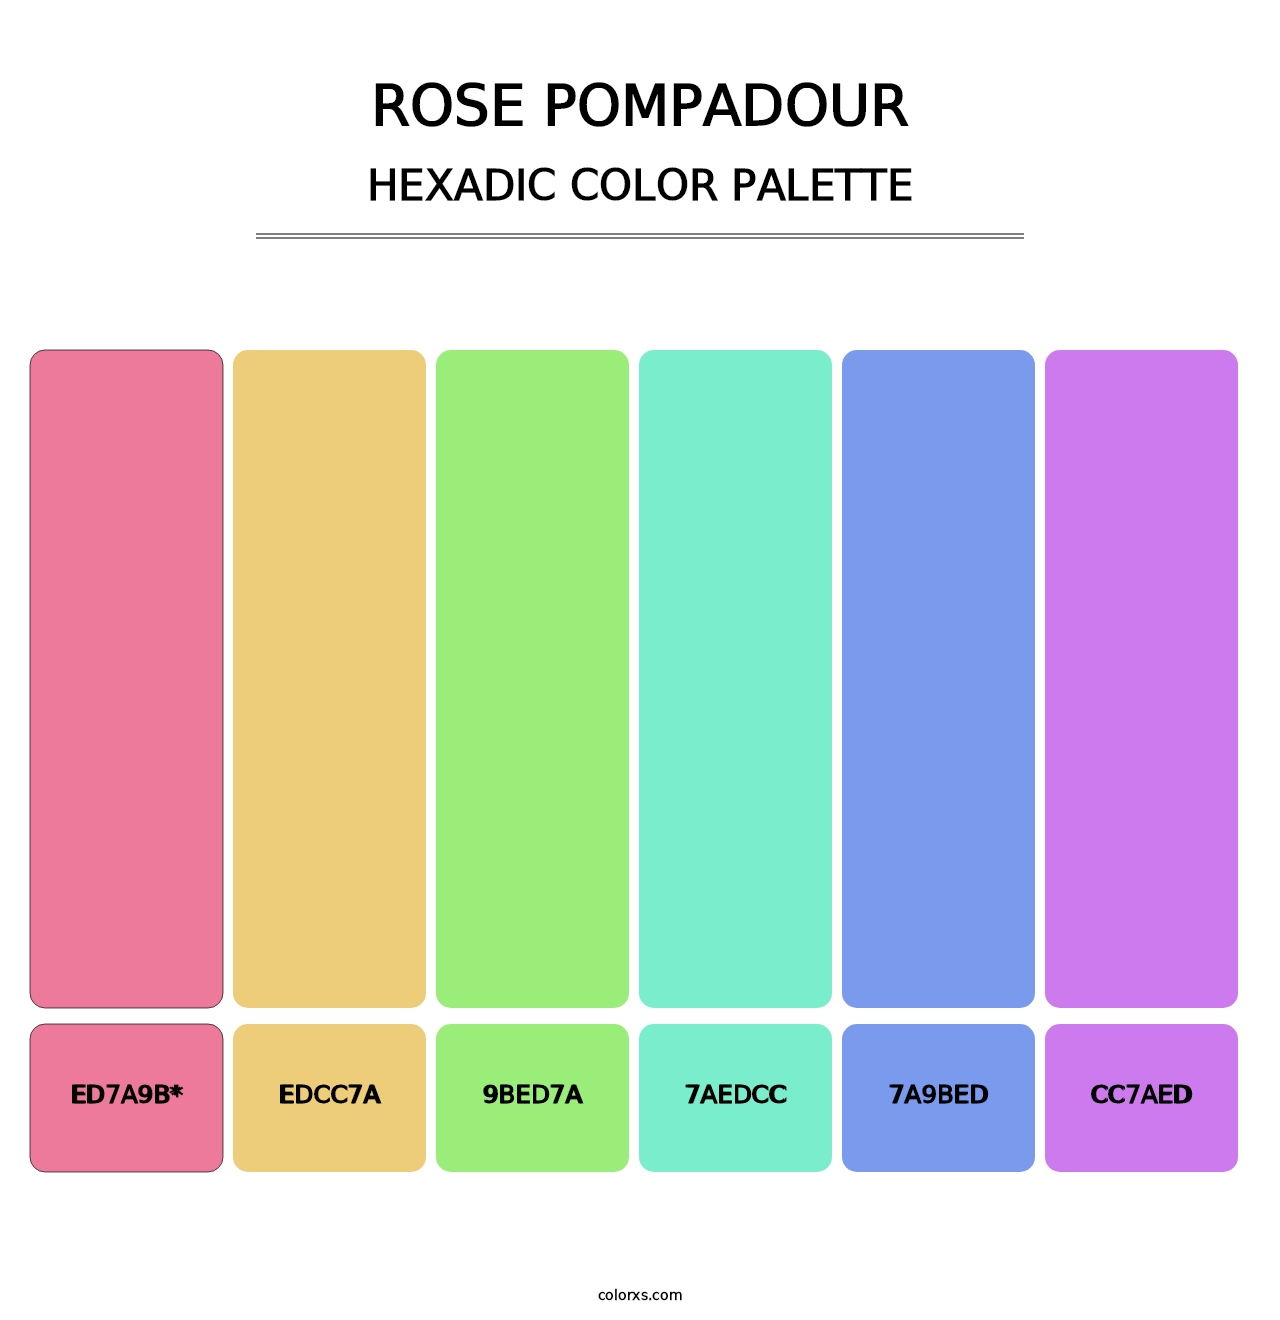 Rose Pompadour - Hexadic Color Palette